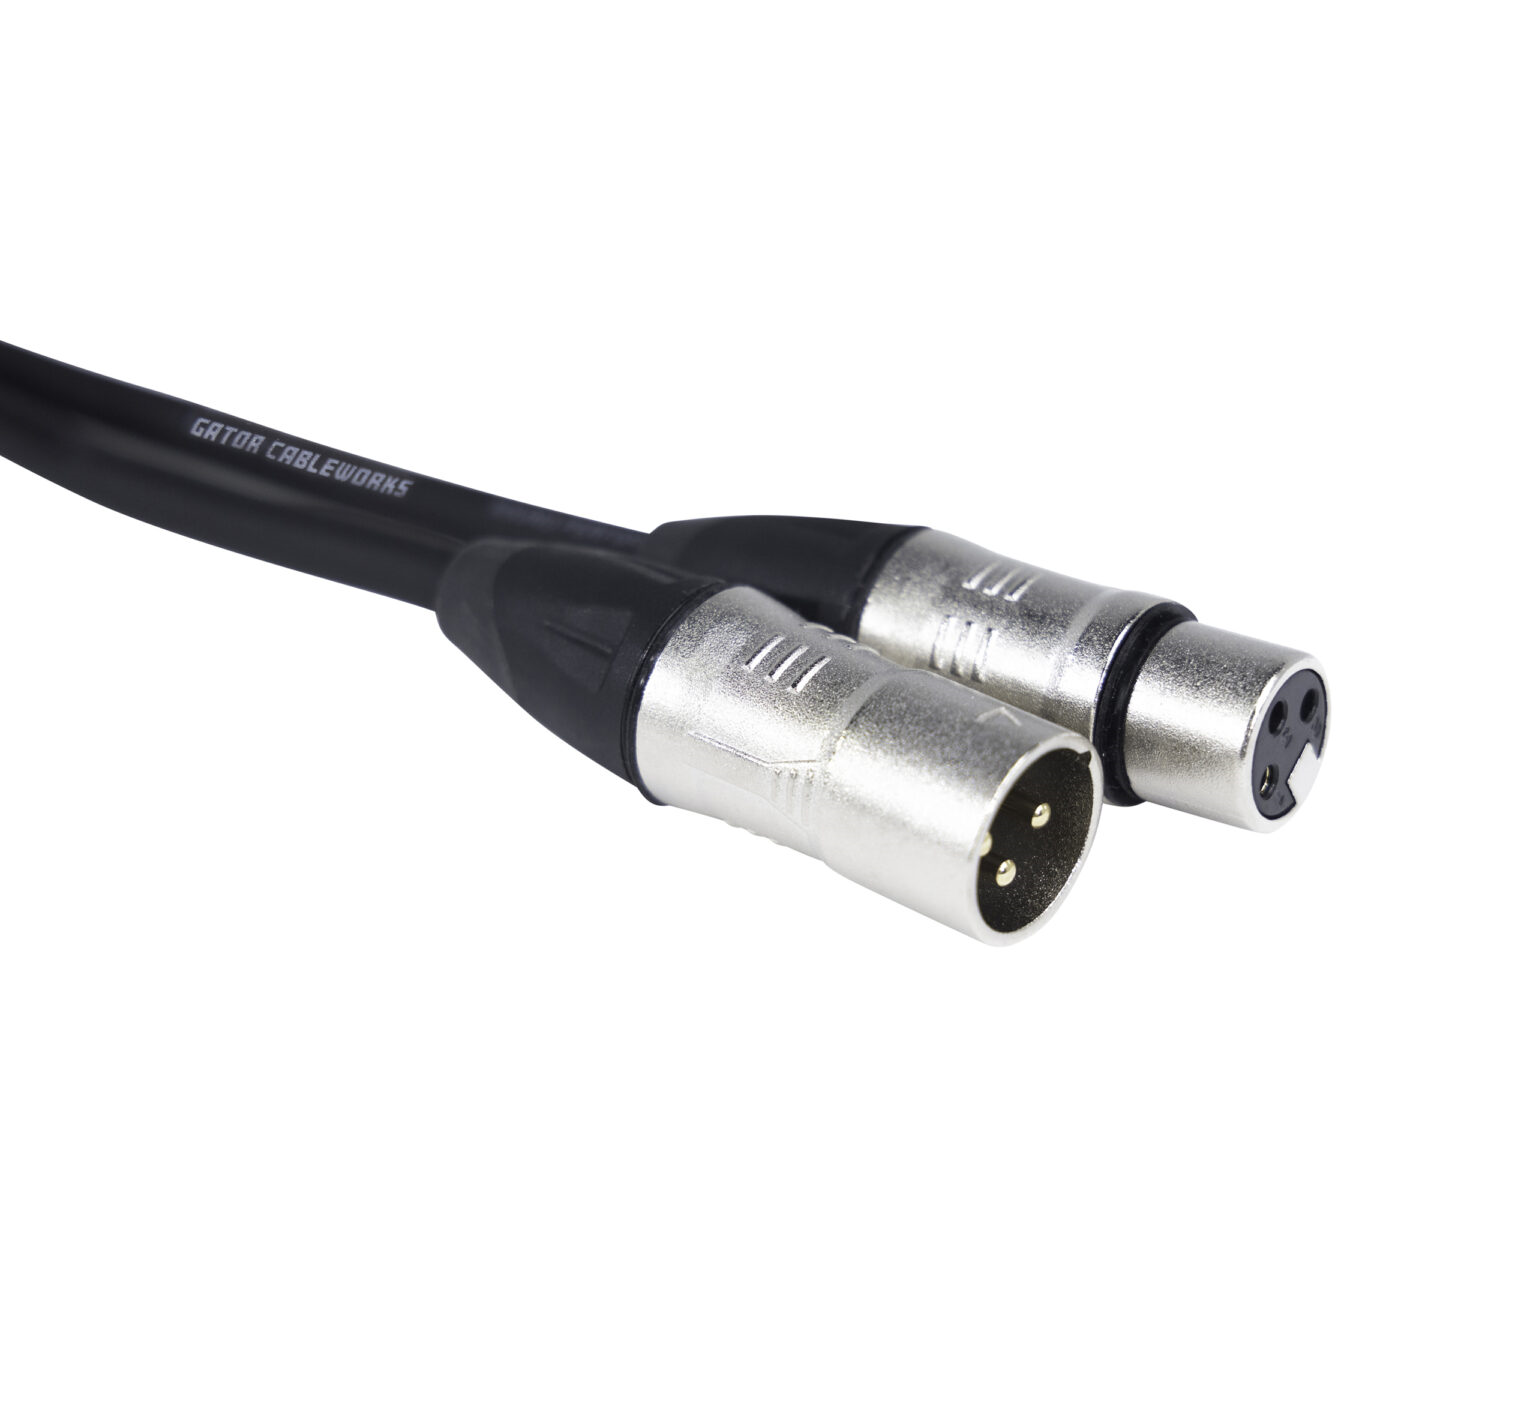 GCWB-XLR-03 3 Foot XLR Microphone Cable